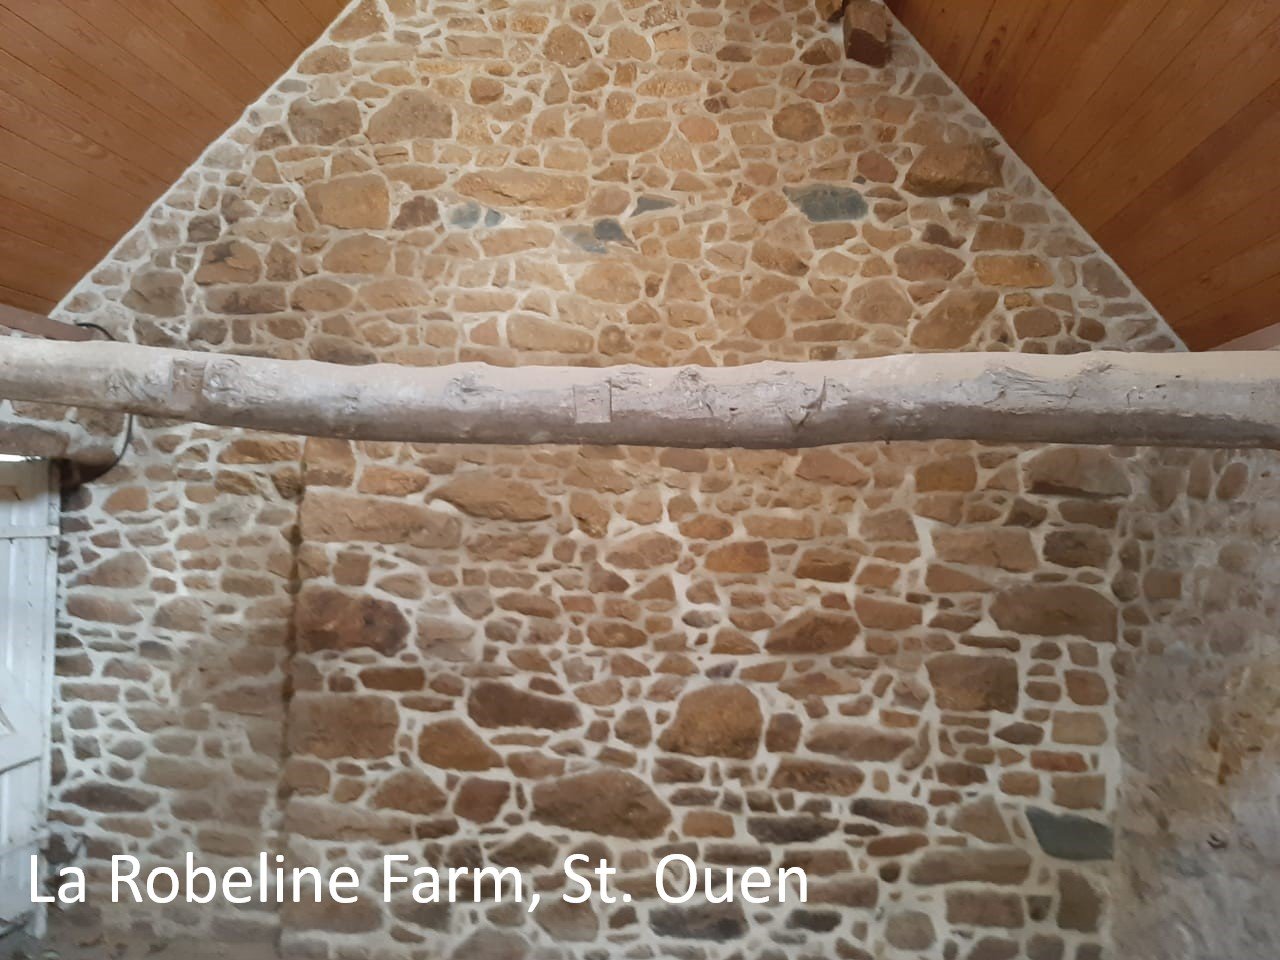 La Robeline Farm, St. Ouen